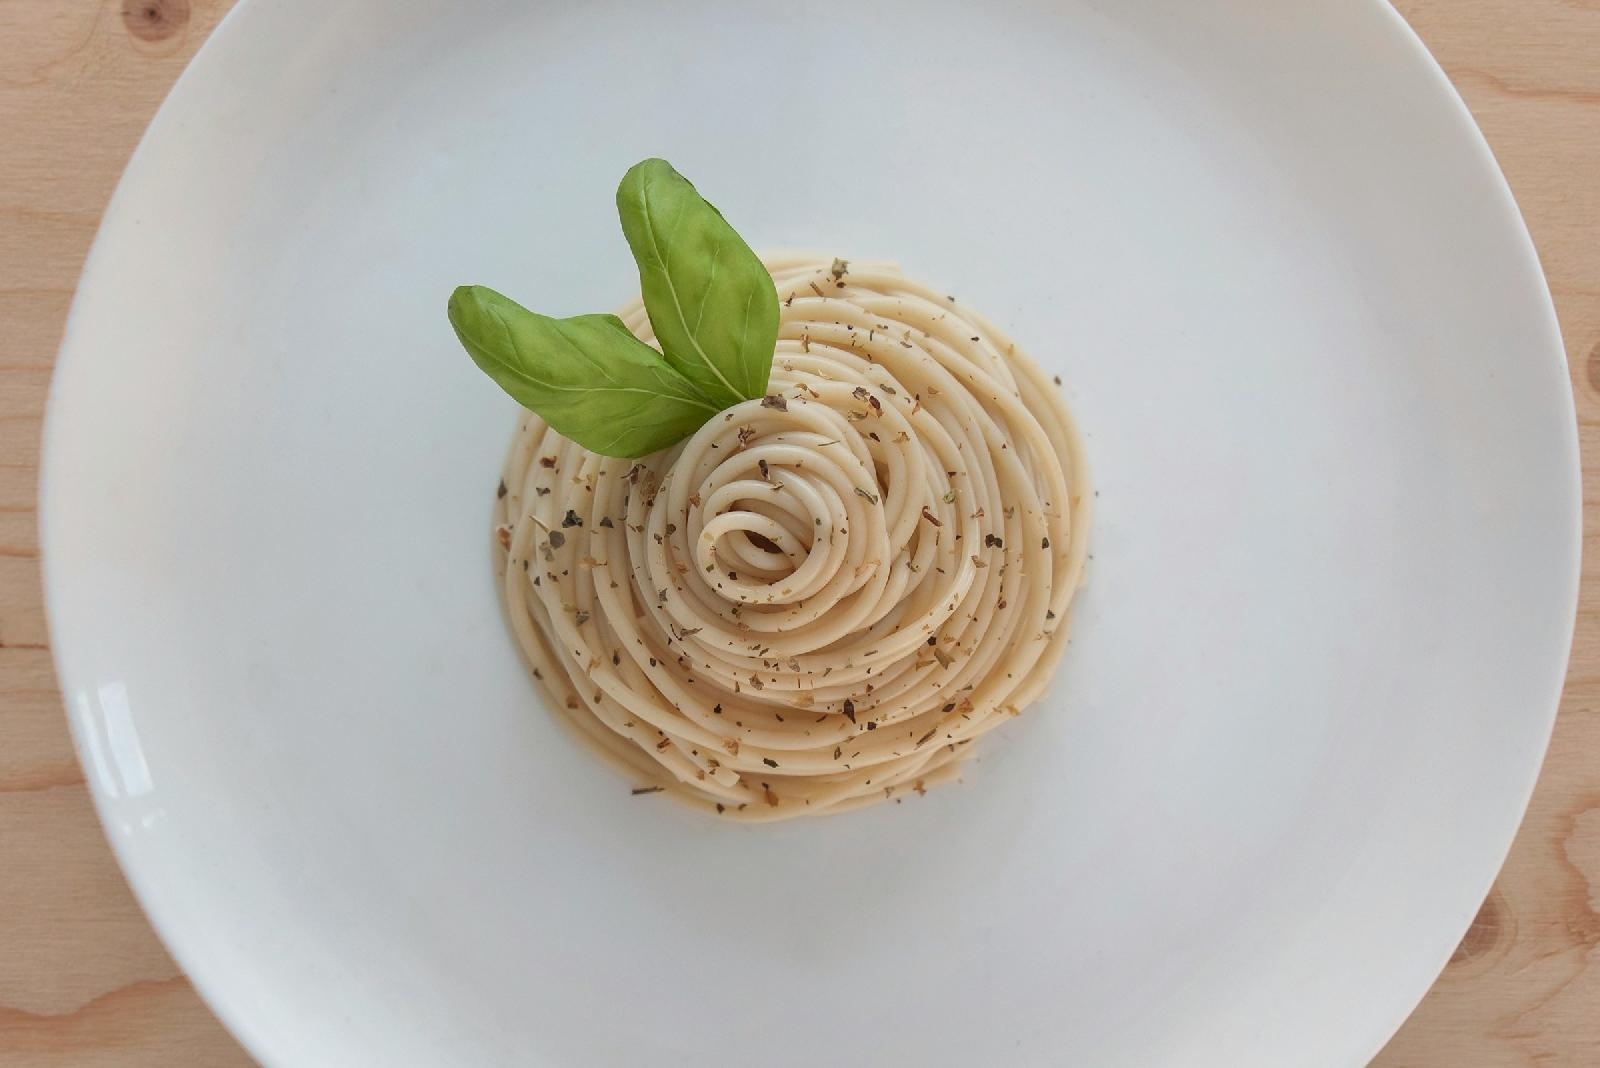 La glace spaghetti : une decouverte culinaire surprenante